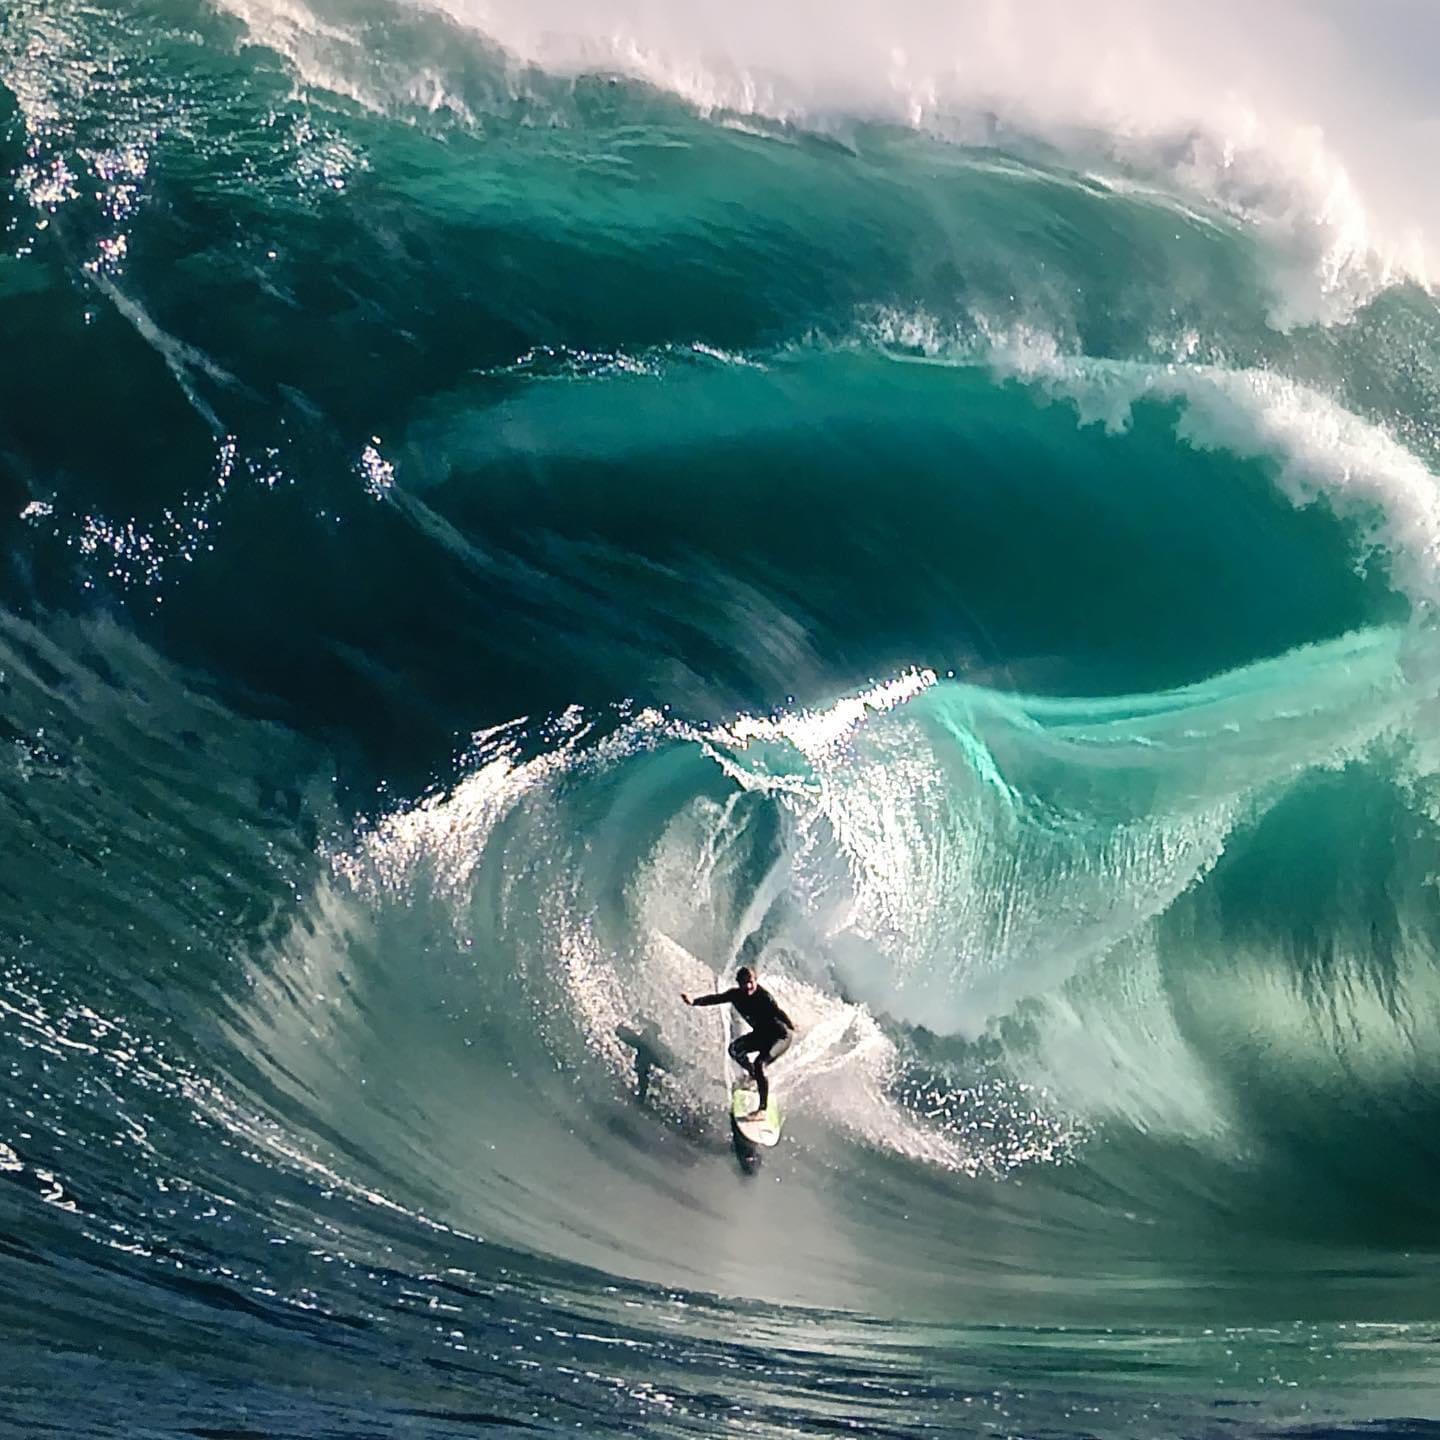 Amazing wave( not photoshopped)